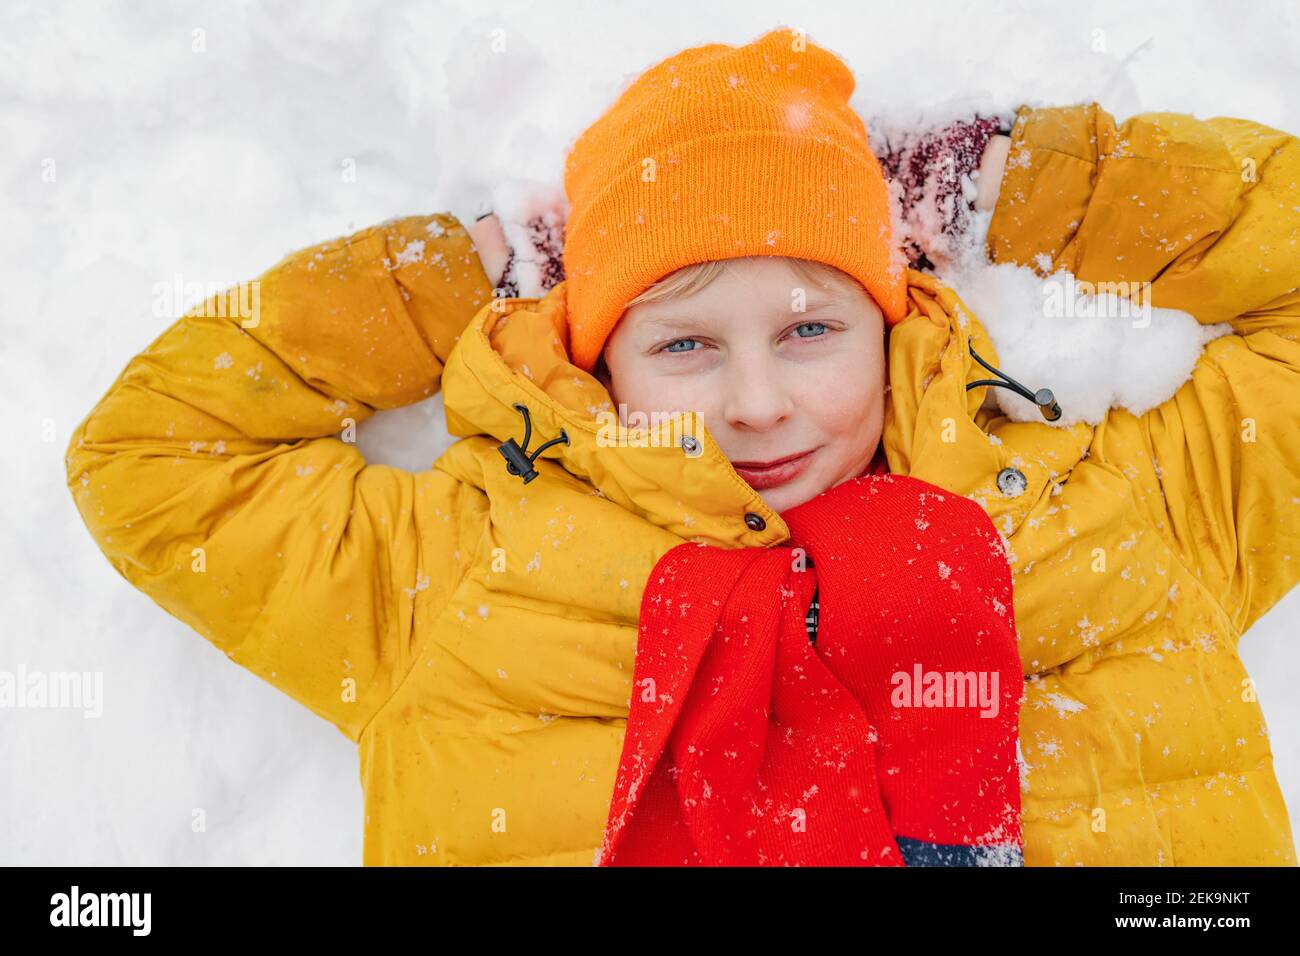 Junge in warmer Kleidung mit Händen hinter dem Kopf liegend Schnee Stockfoto